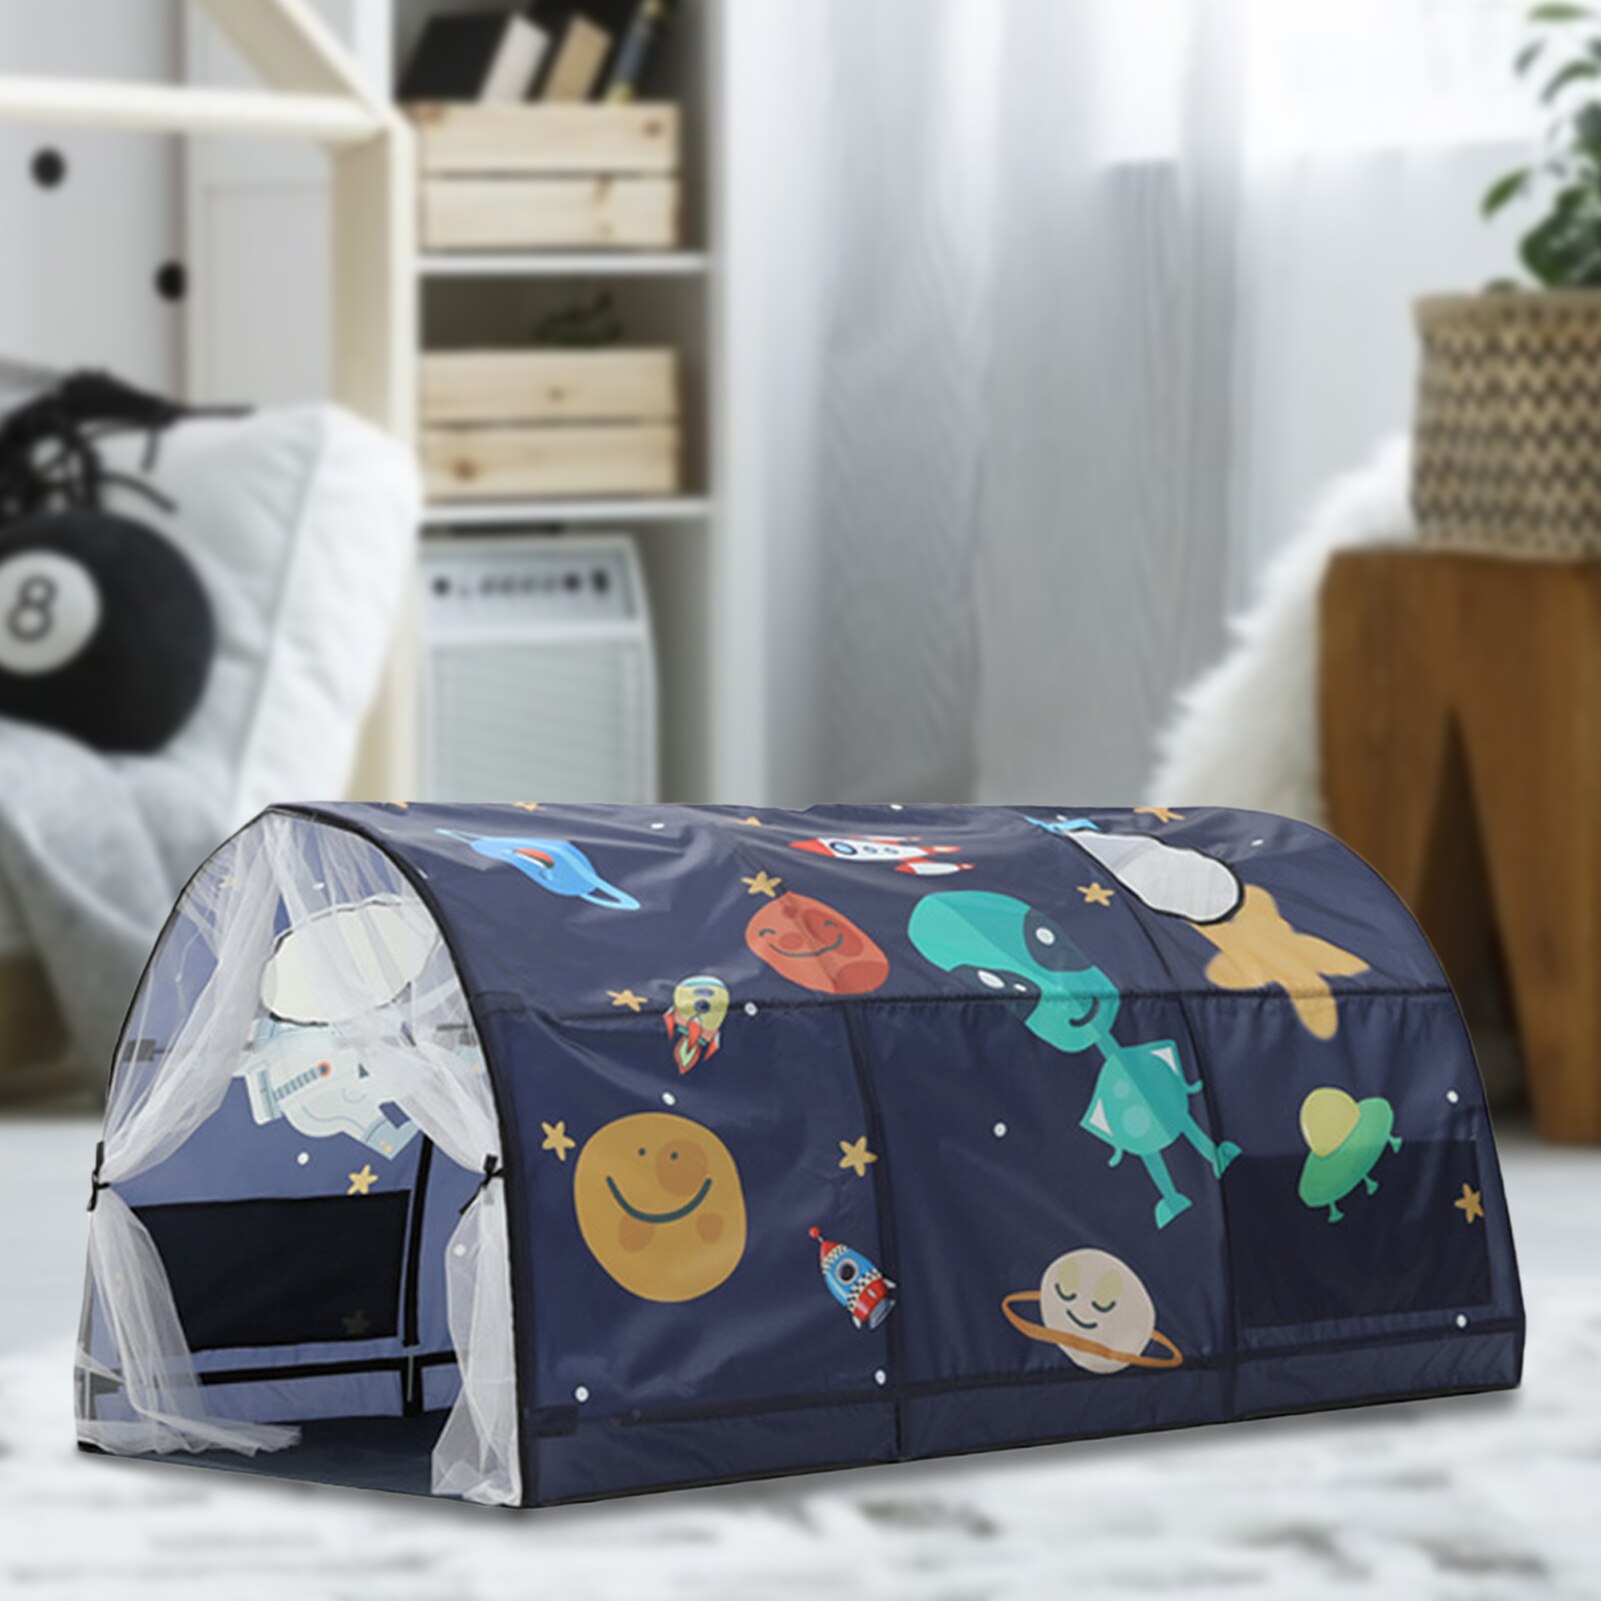 Tegneserie mønster seng baldakin drøm telt børn lege pop op telte legehus for børn